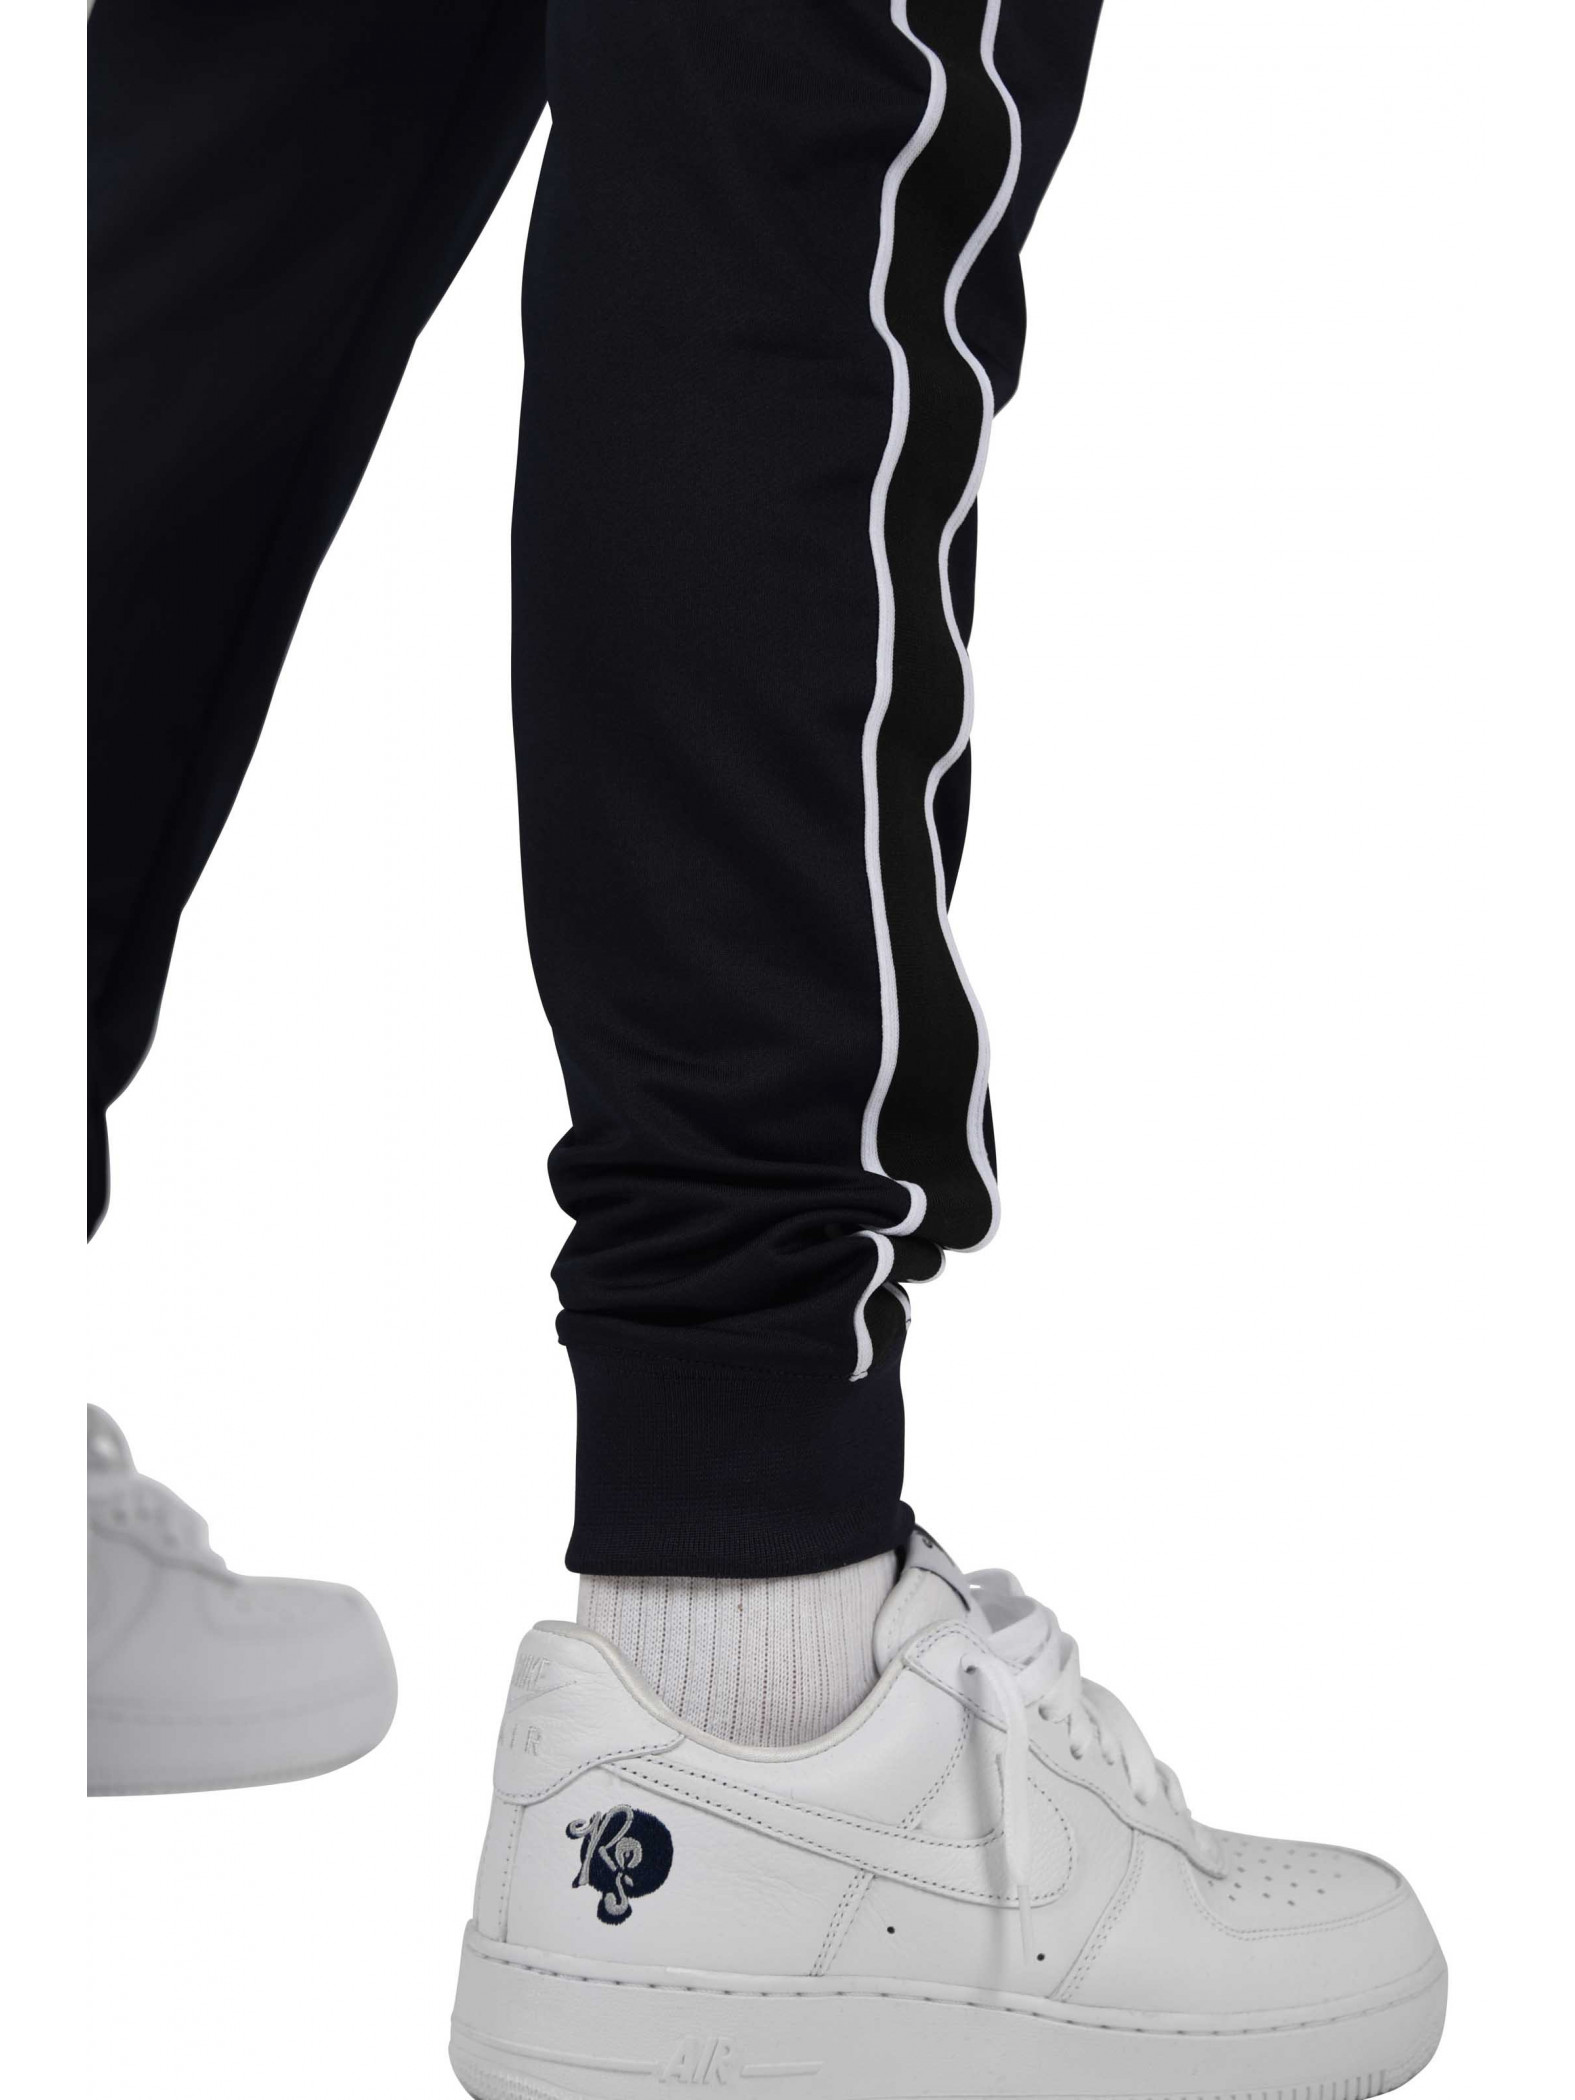 Pantalon de jogging bandes latérales bicolores contrastantes Homme Project X Paris